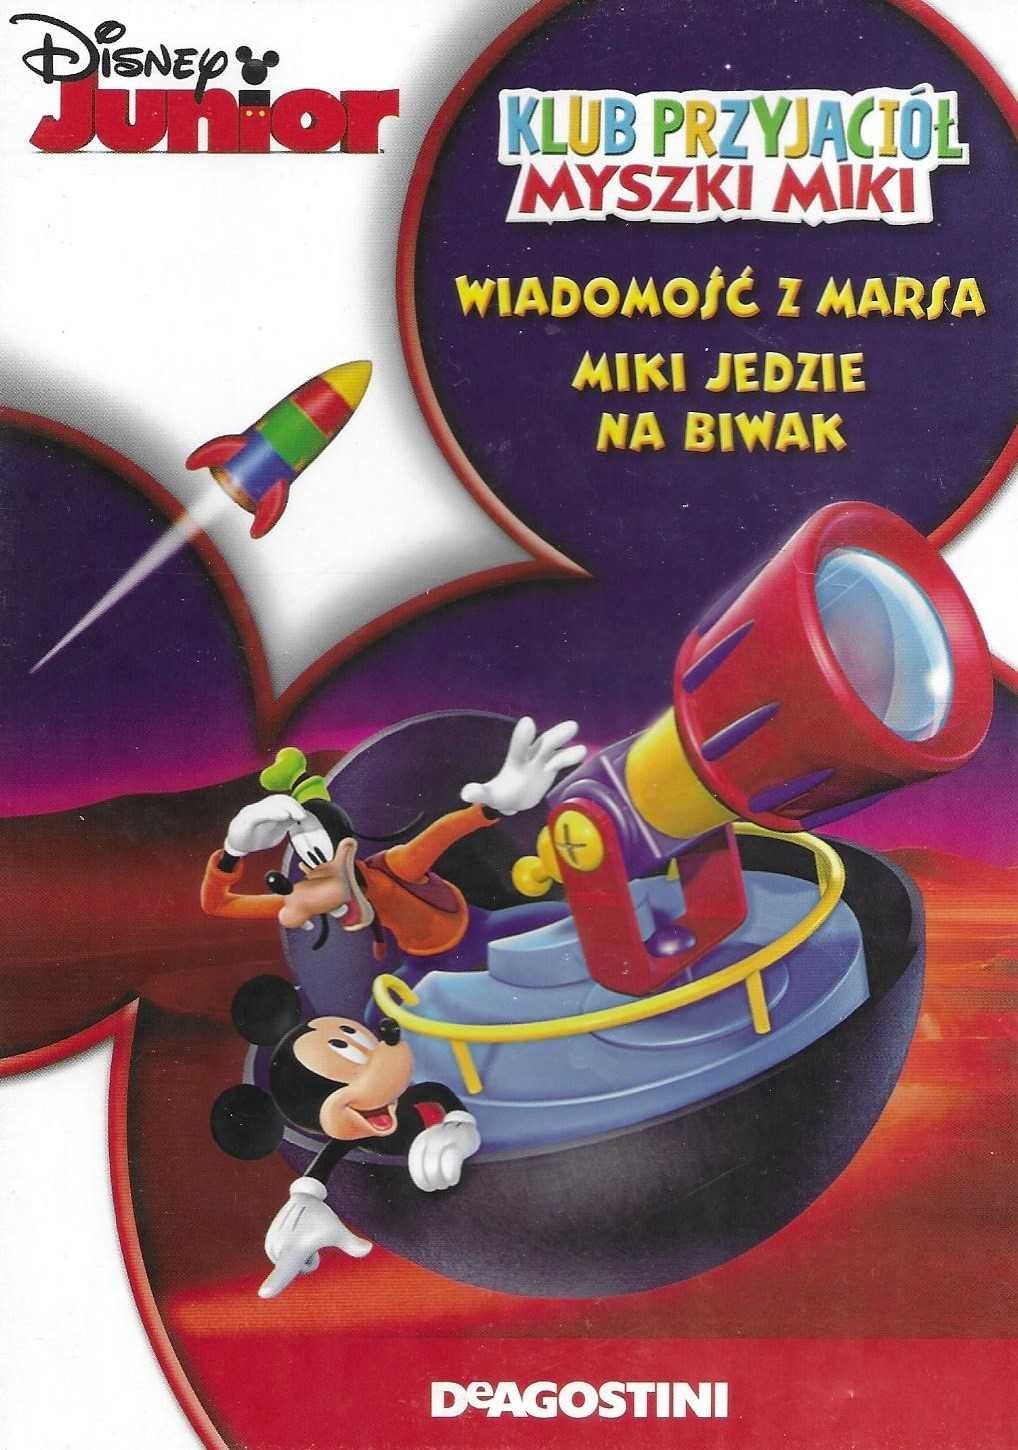 Klub Myszki Miki - Wiadomość z Marsa / Miki jedzie na biwak DVD